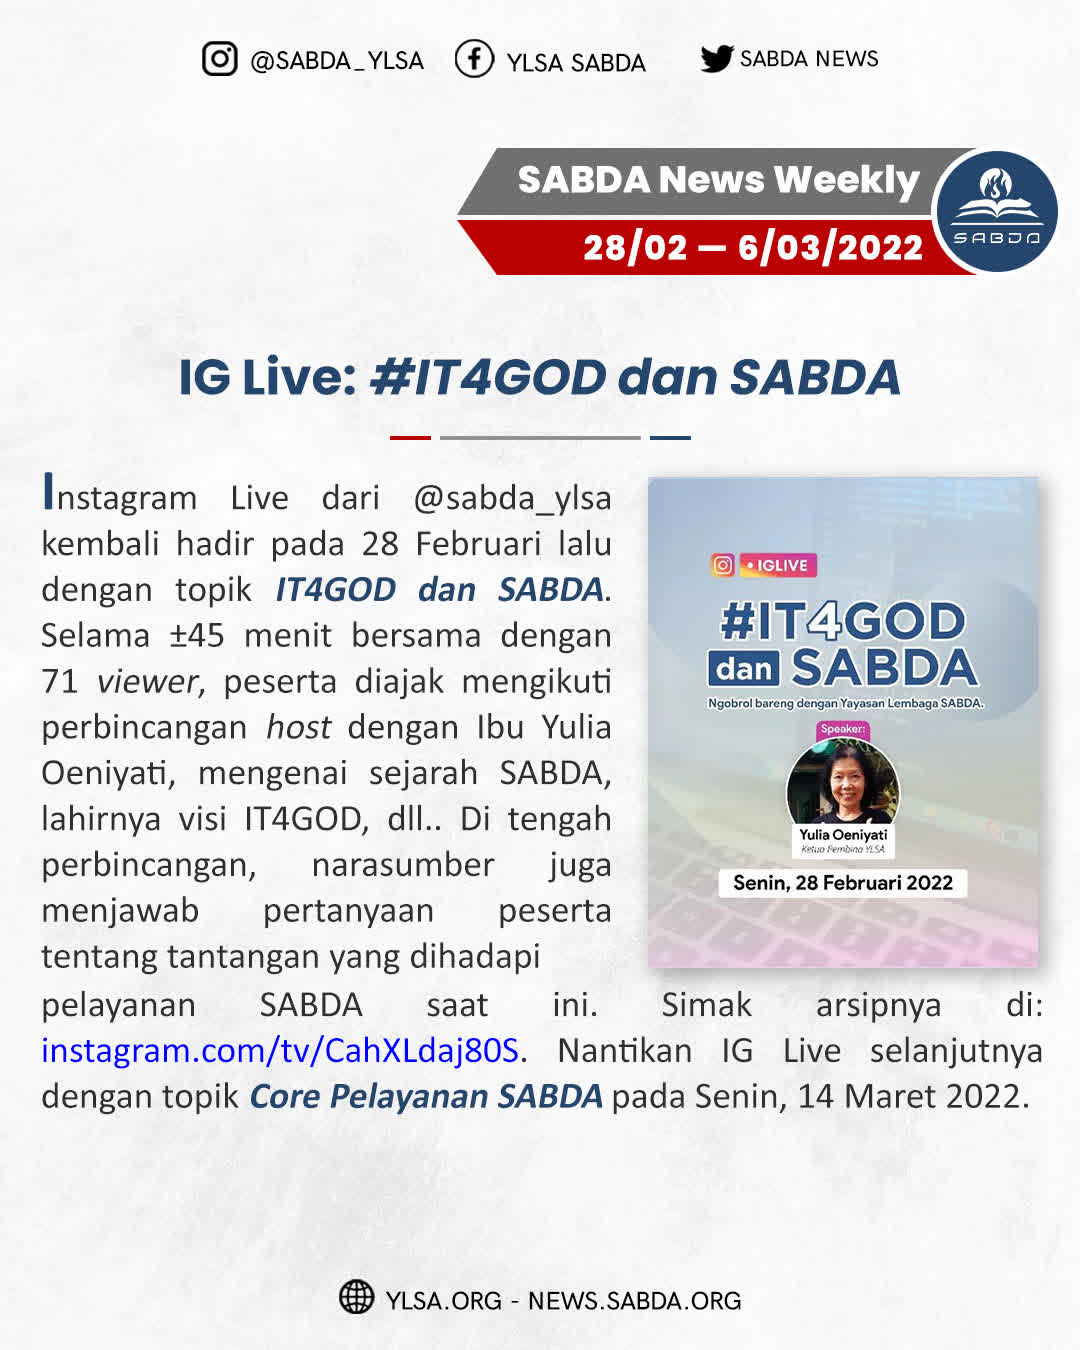 IG Live #IT4GOD & SABDA